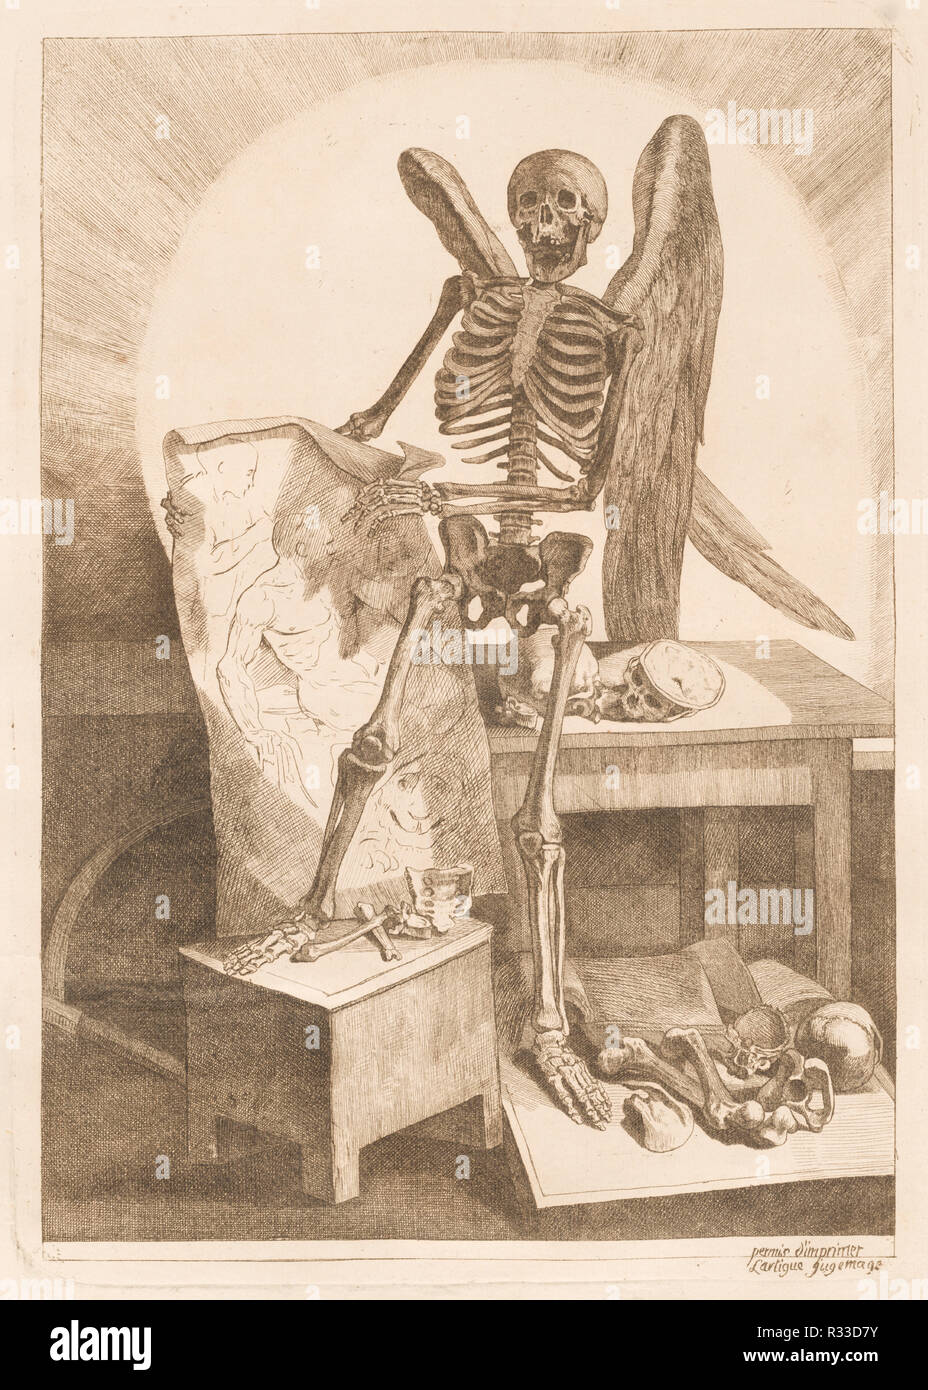 Eine geflügelte Skelett Holding eine anatomische Zeichnung. Stand: 1779. Abmessungen: Platte: 35,2 x 25,1 cm (13 7/8 x 9 7/8 in.) Blatt: 52,7 x 39,9 cm (20 3/4 x 15 11/16 in.). Medium: Radierung und Gravur auf Bütten. Museum: Nationalgalerie, Washington DC. Autor: Jacques Gamelin. Stockfoto